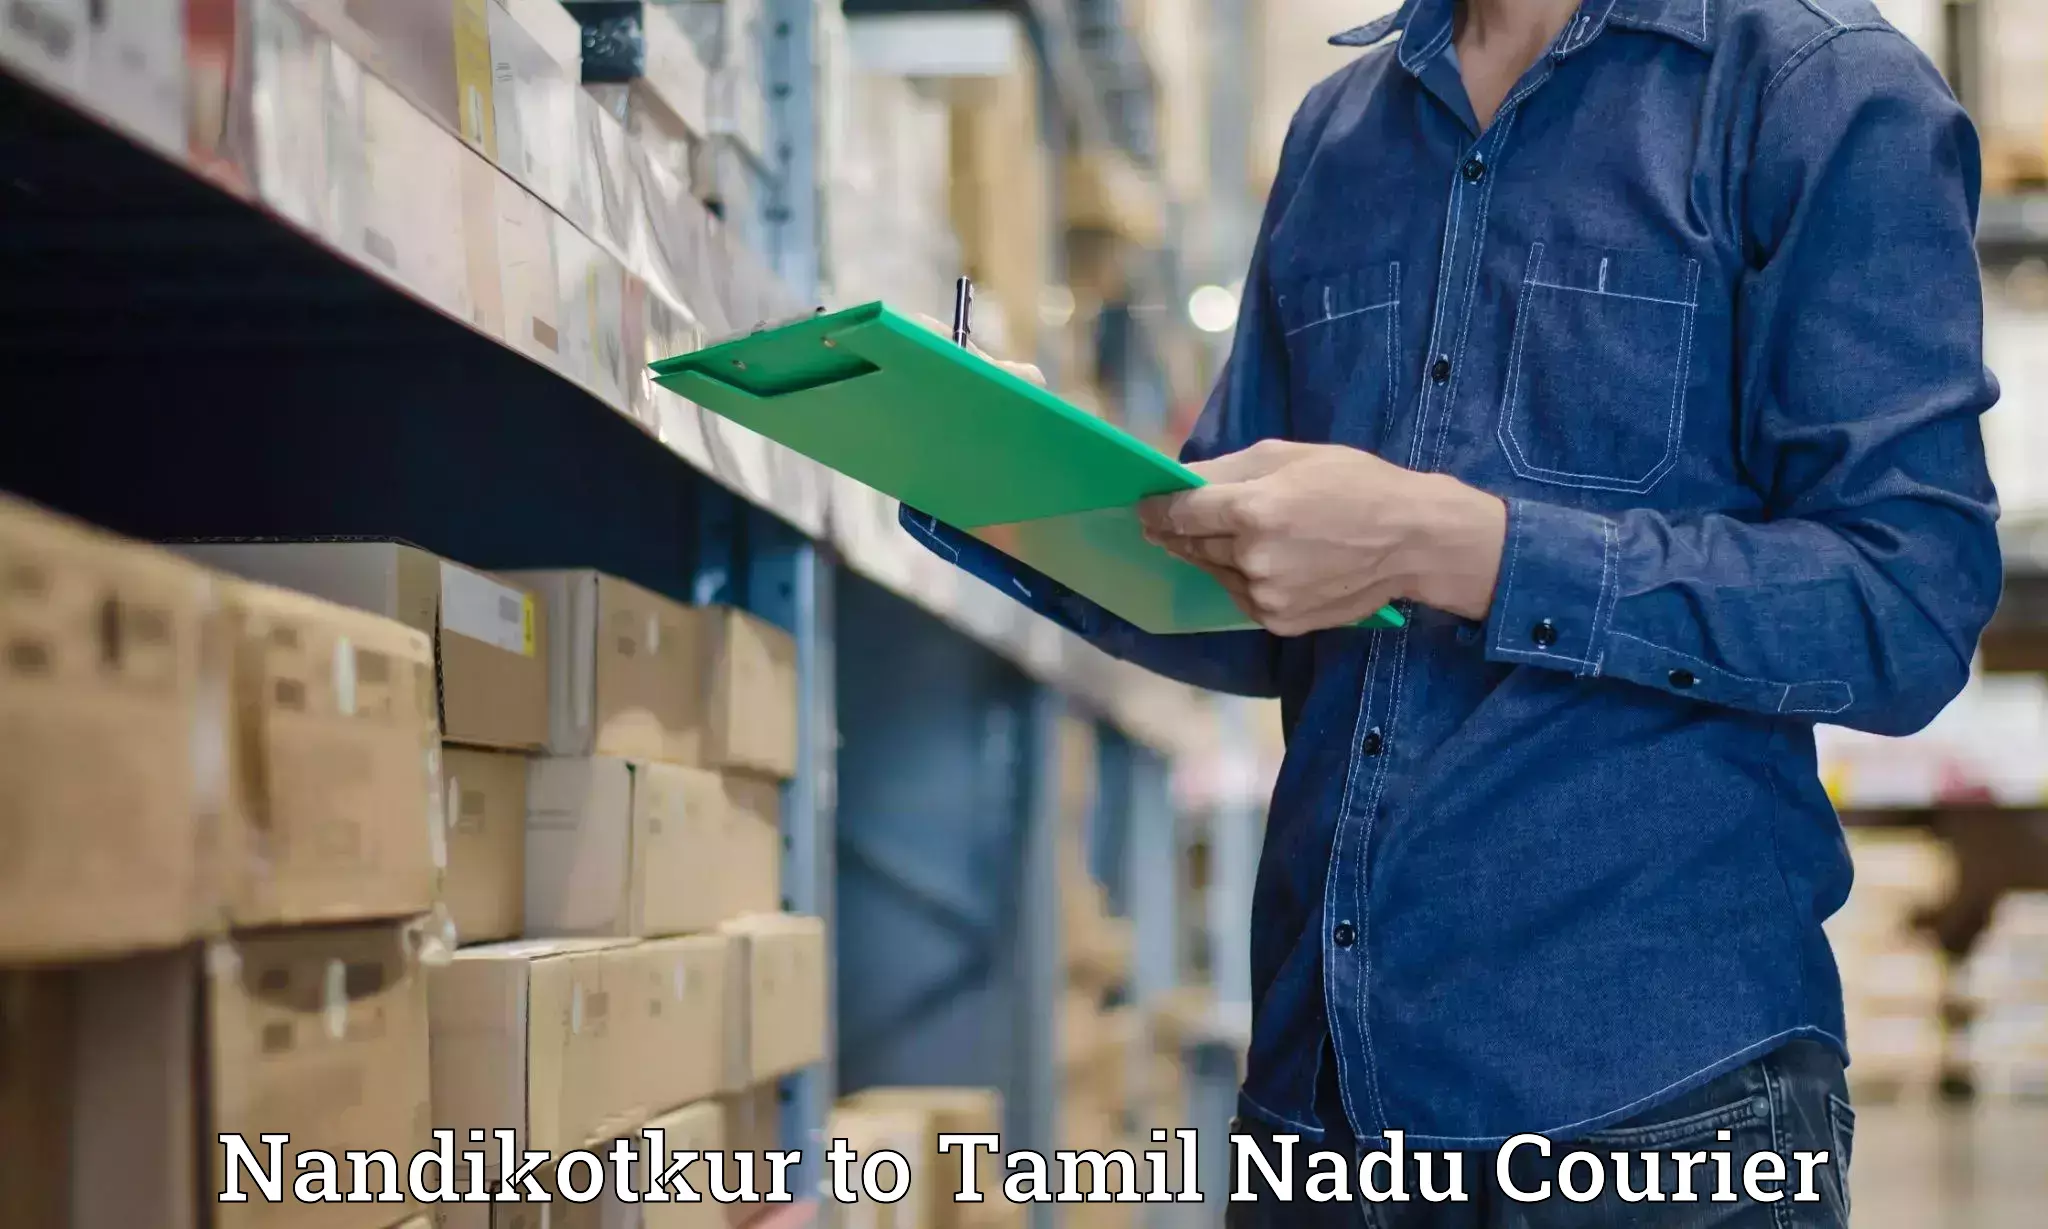 High value parcel delivery in Nandikotkur to Tamil Nadu